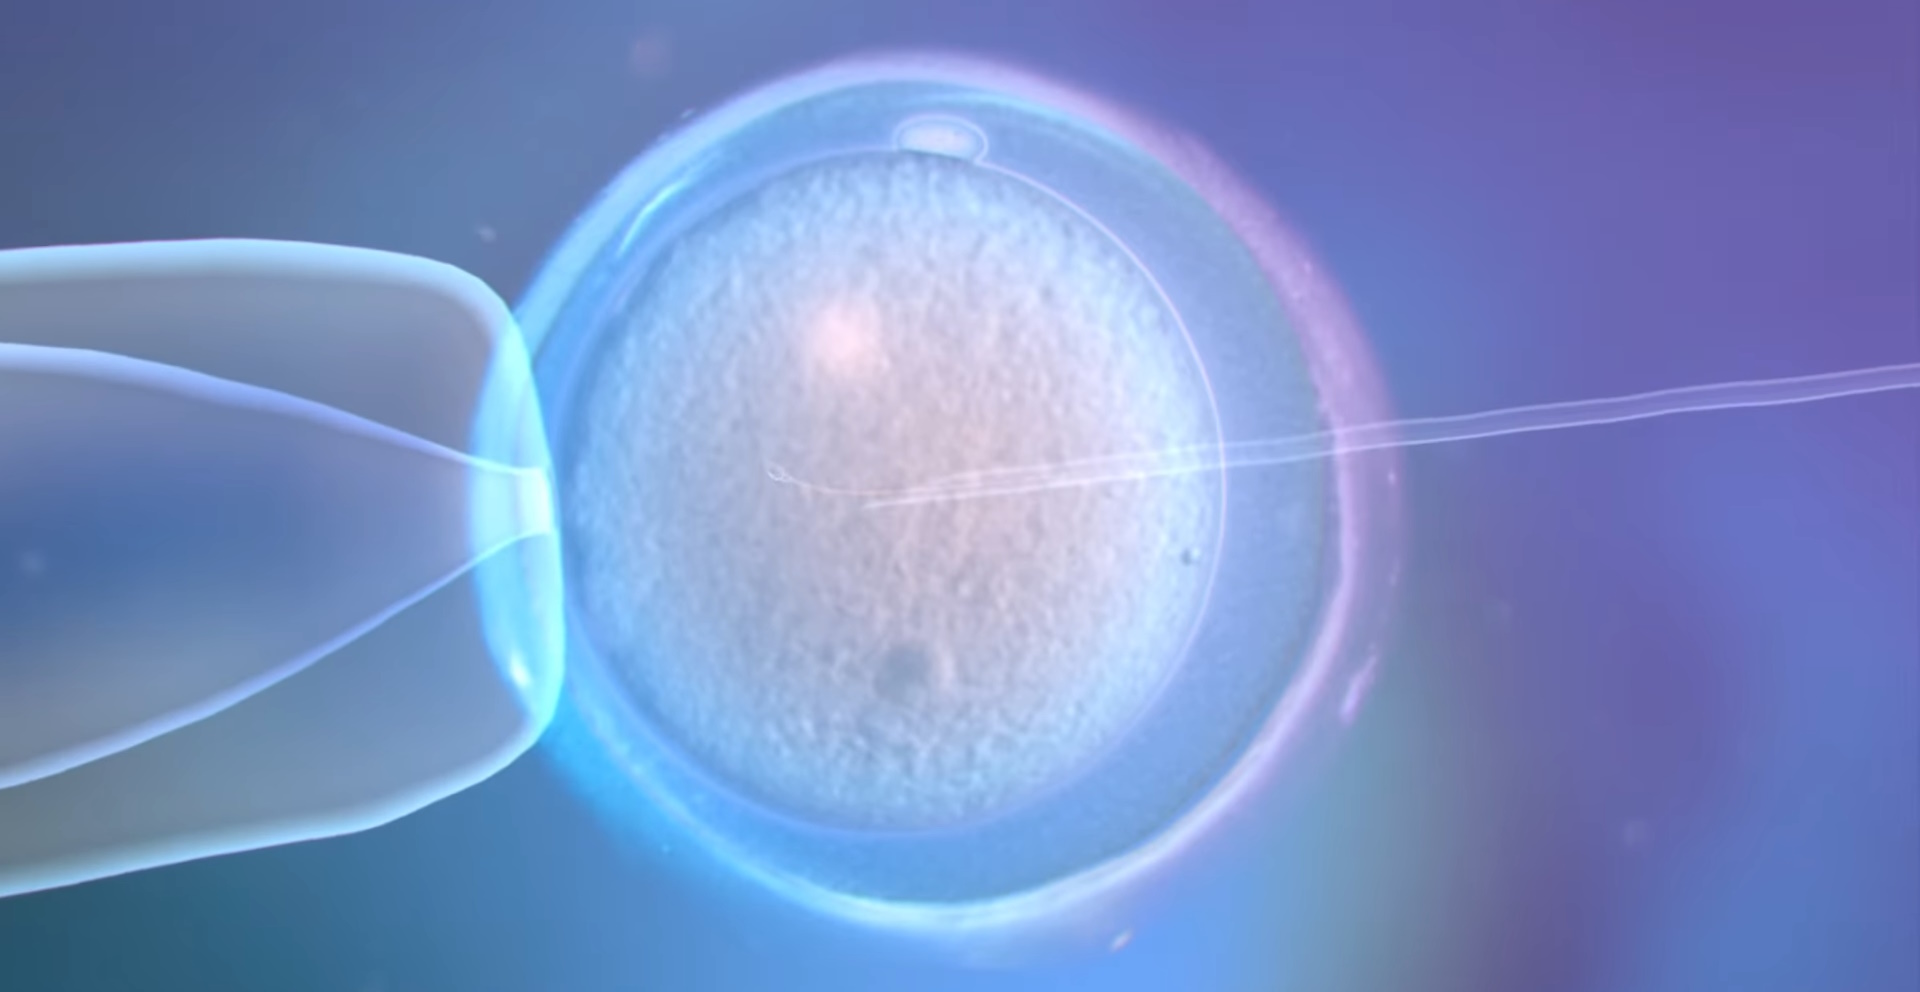 La fecundación in vitro involucra la fertilización de óvulos fuera del cuerpo de la mujer, en un laboratorio, y luego la transferencia de los embriones resultantes al útero de la mujer para el desarrollo y el embarazo. La FIV es una de las técnicas más comunes dentro de las tecnologías de reproducción asistida (TRA) y ha permitido que muchas parejas infértiles cumplan su sueño de ser padres.